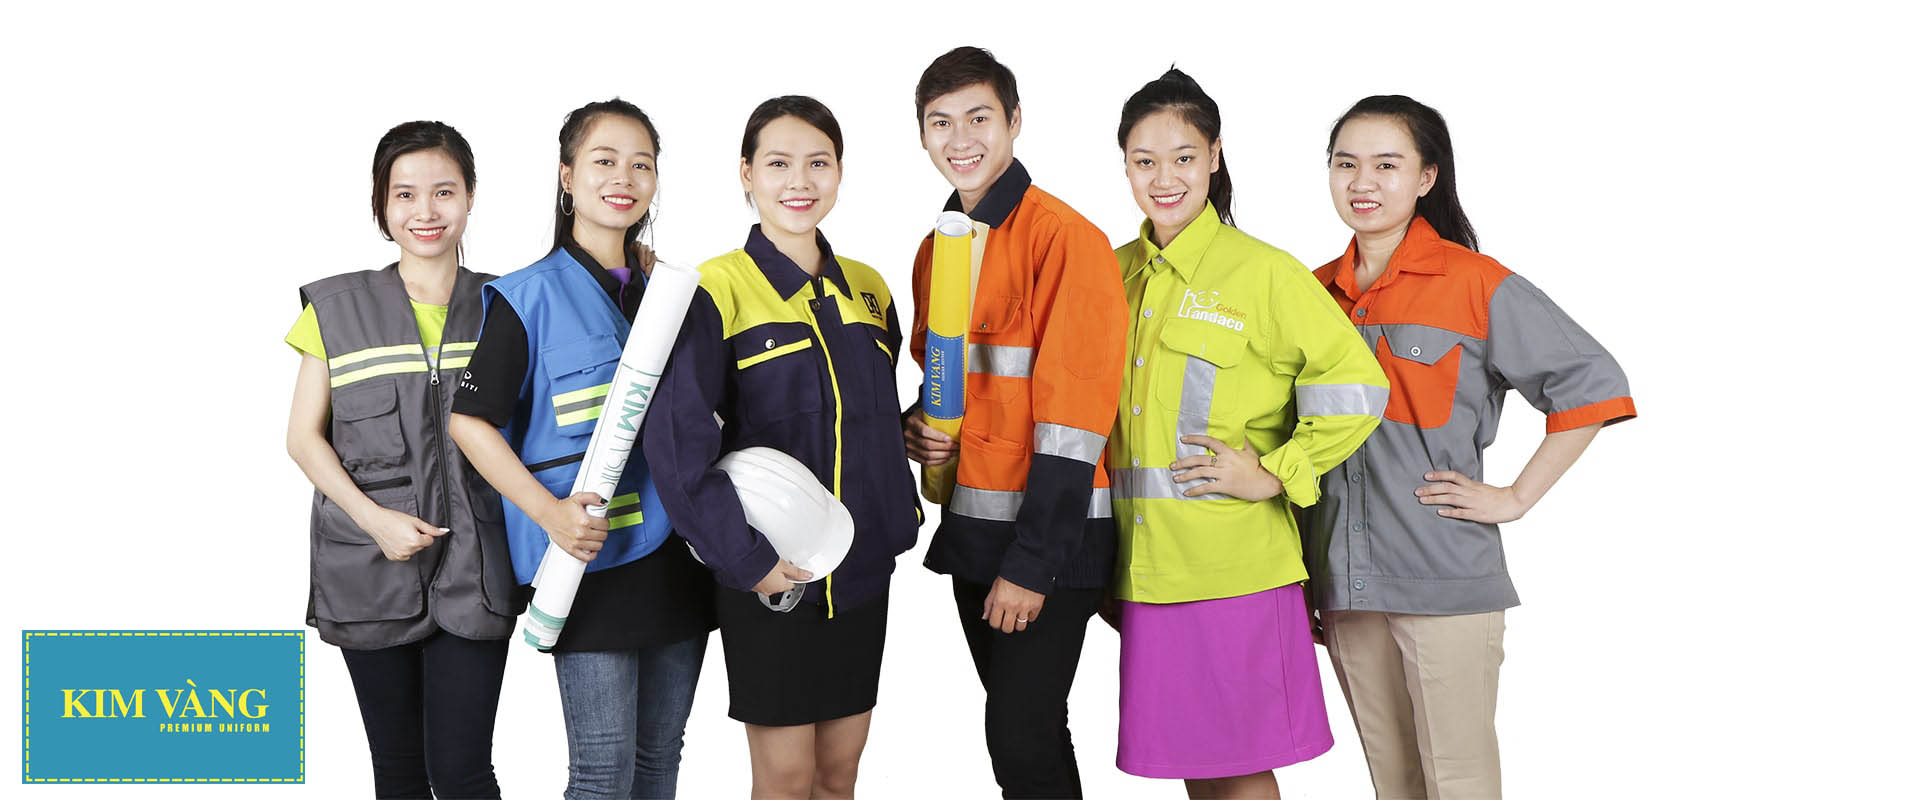 Làm việc trong môi trường nào cần sử dụng đồng phục bảo hộ lao động?